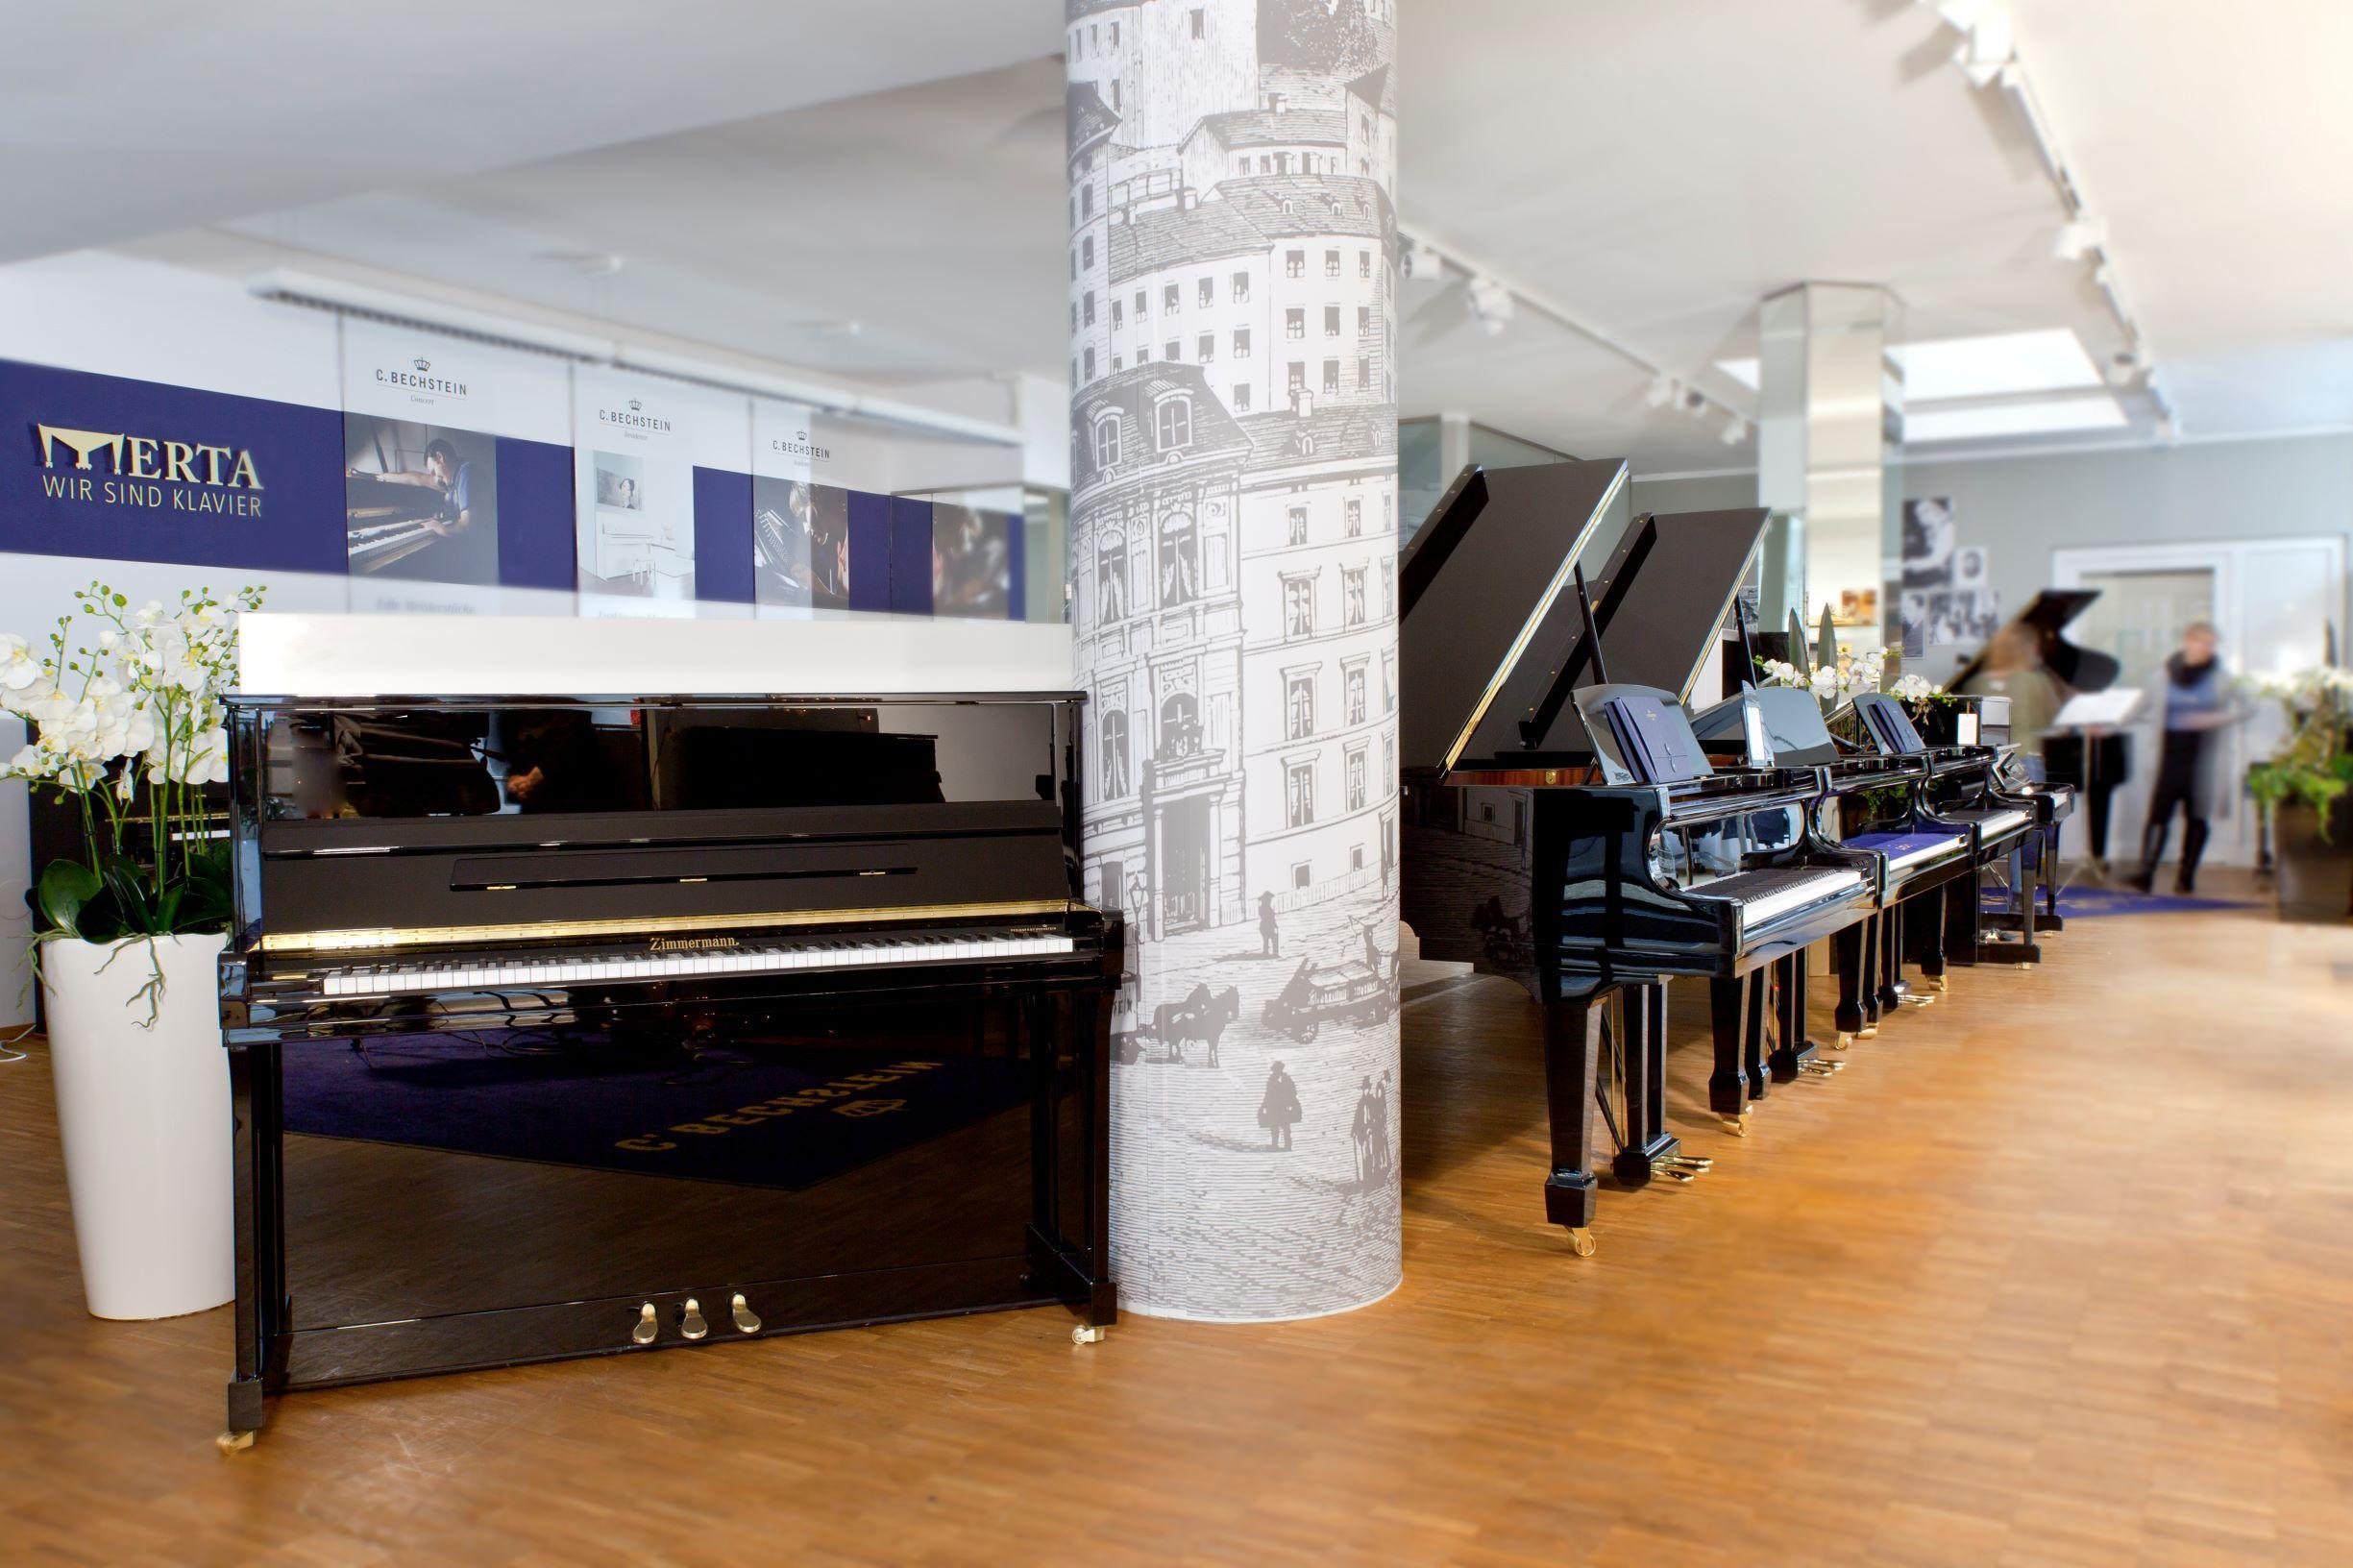 Vorschau - Foto 1 von C. Bechstein Centrum Linz / Klaviersalon Merta GmbH